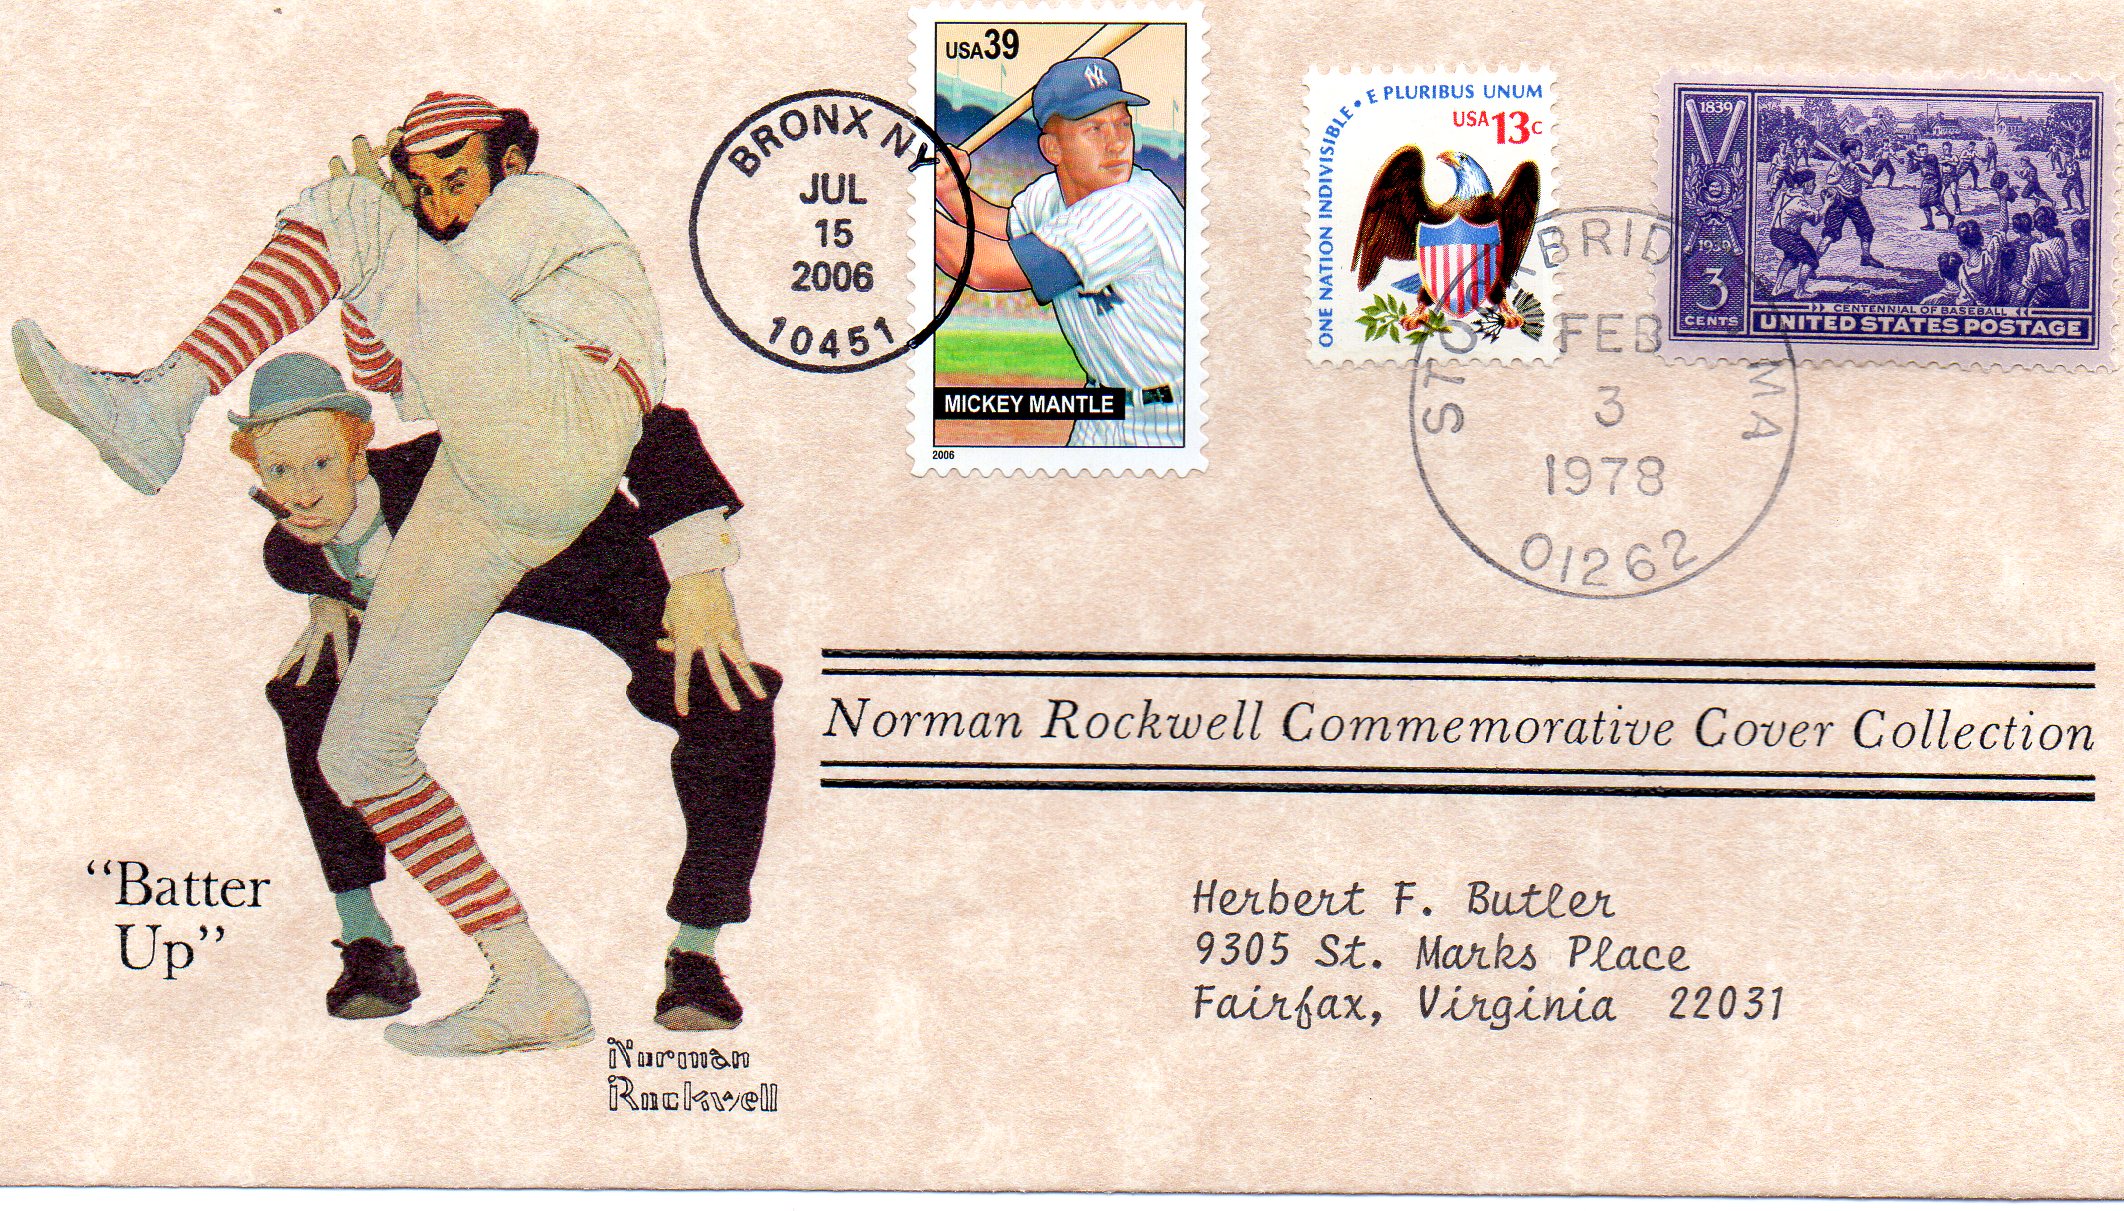 2006 norman rockwell 02/03/1978 postmark